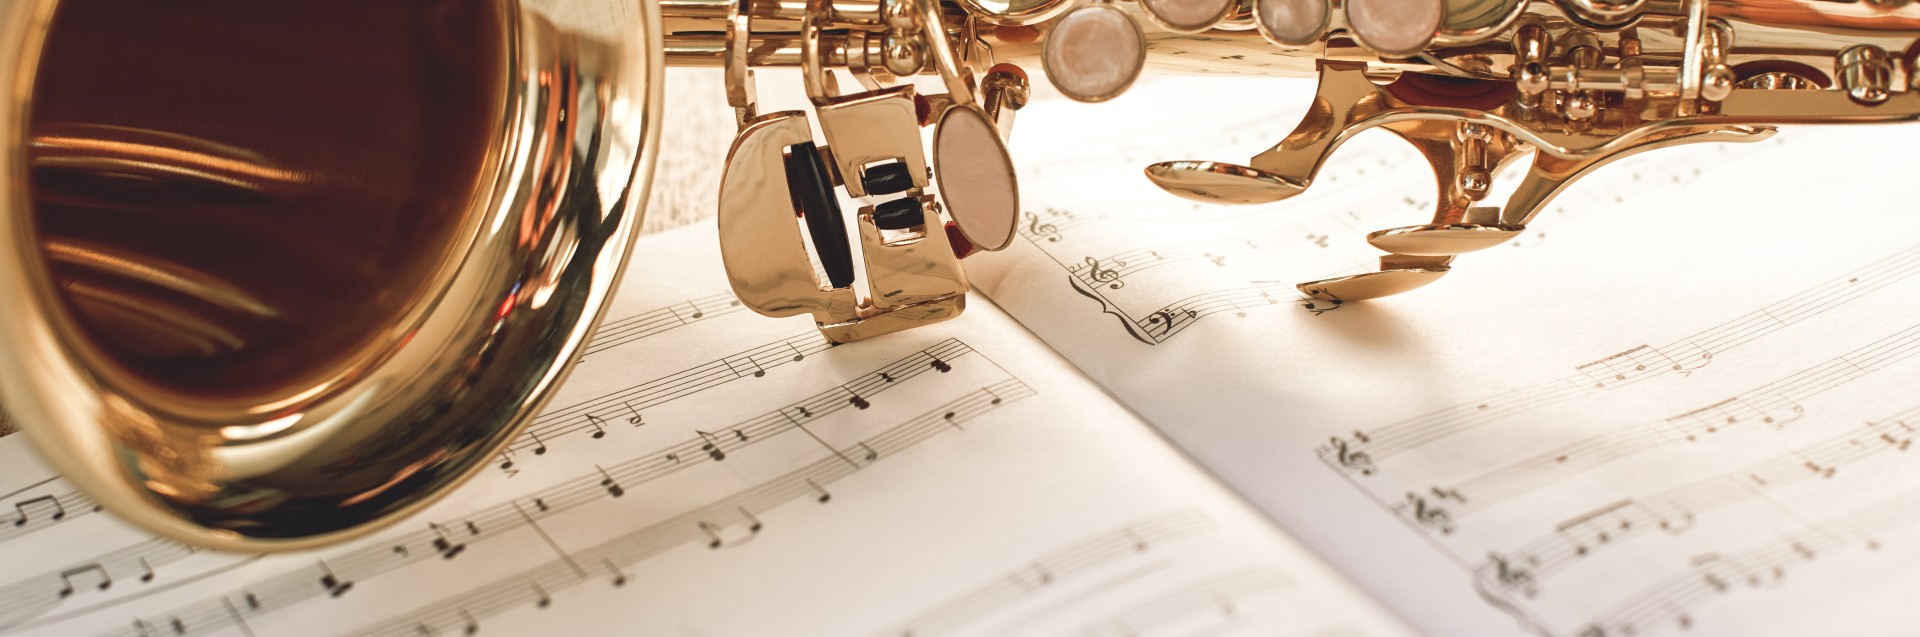 Nærbilde av en gyllen saksofon liggende på musikknoter